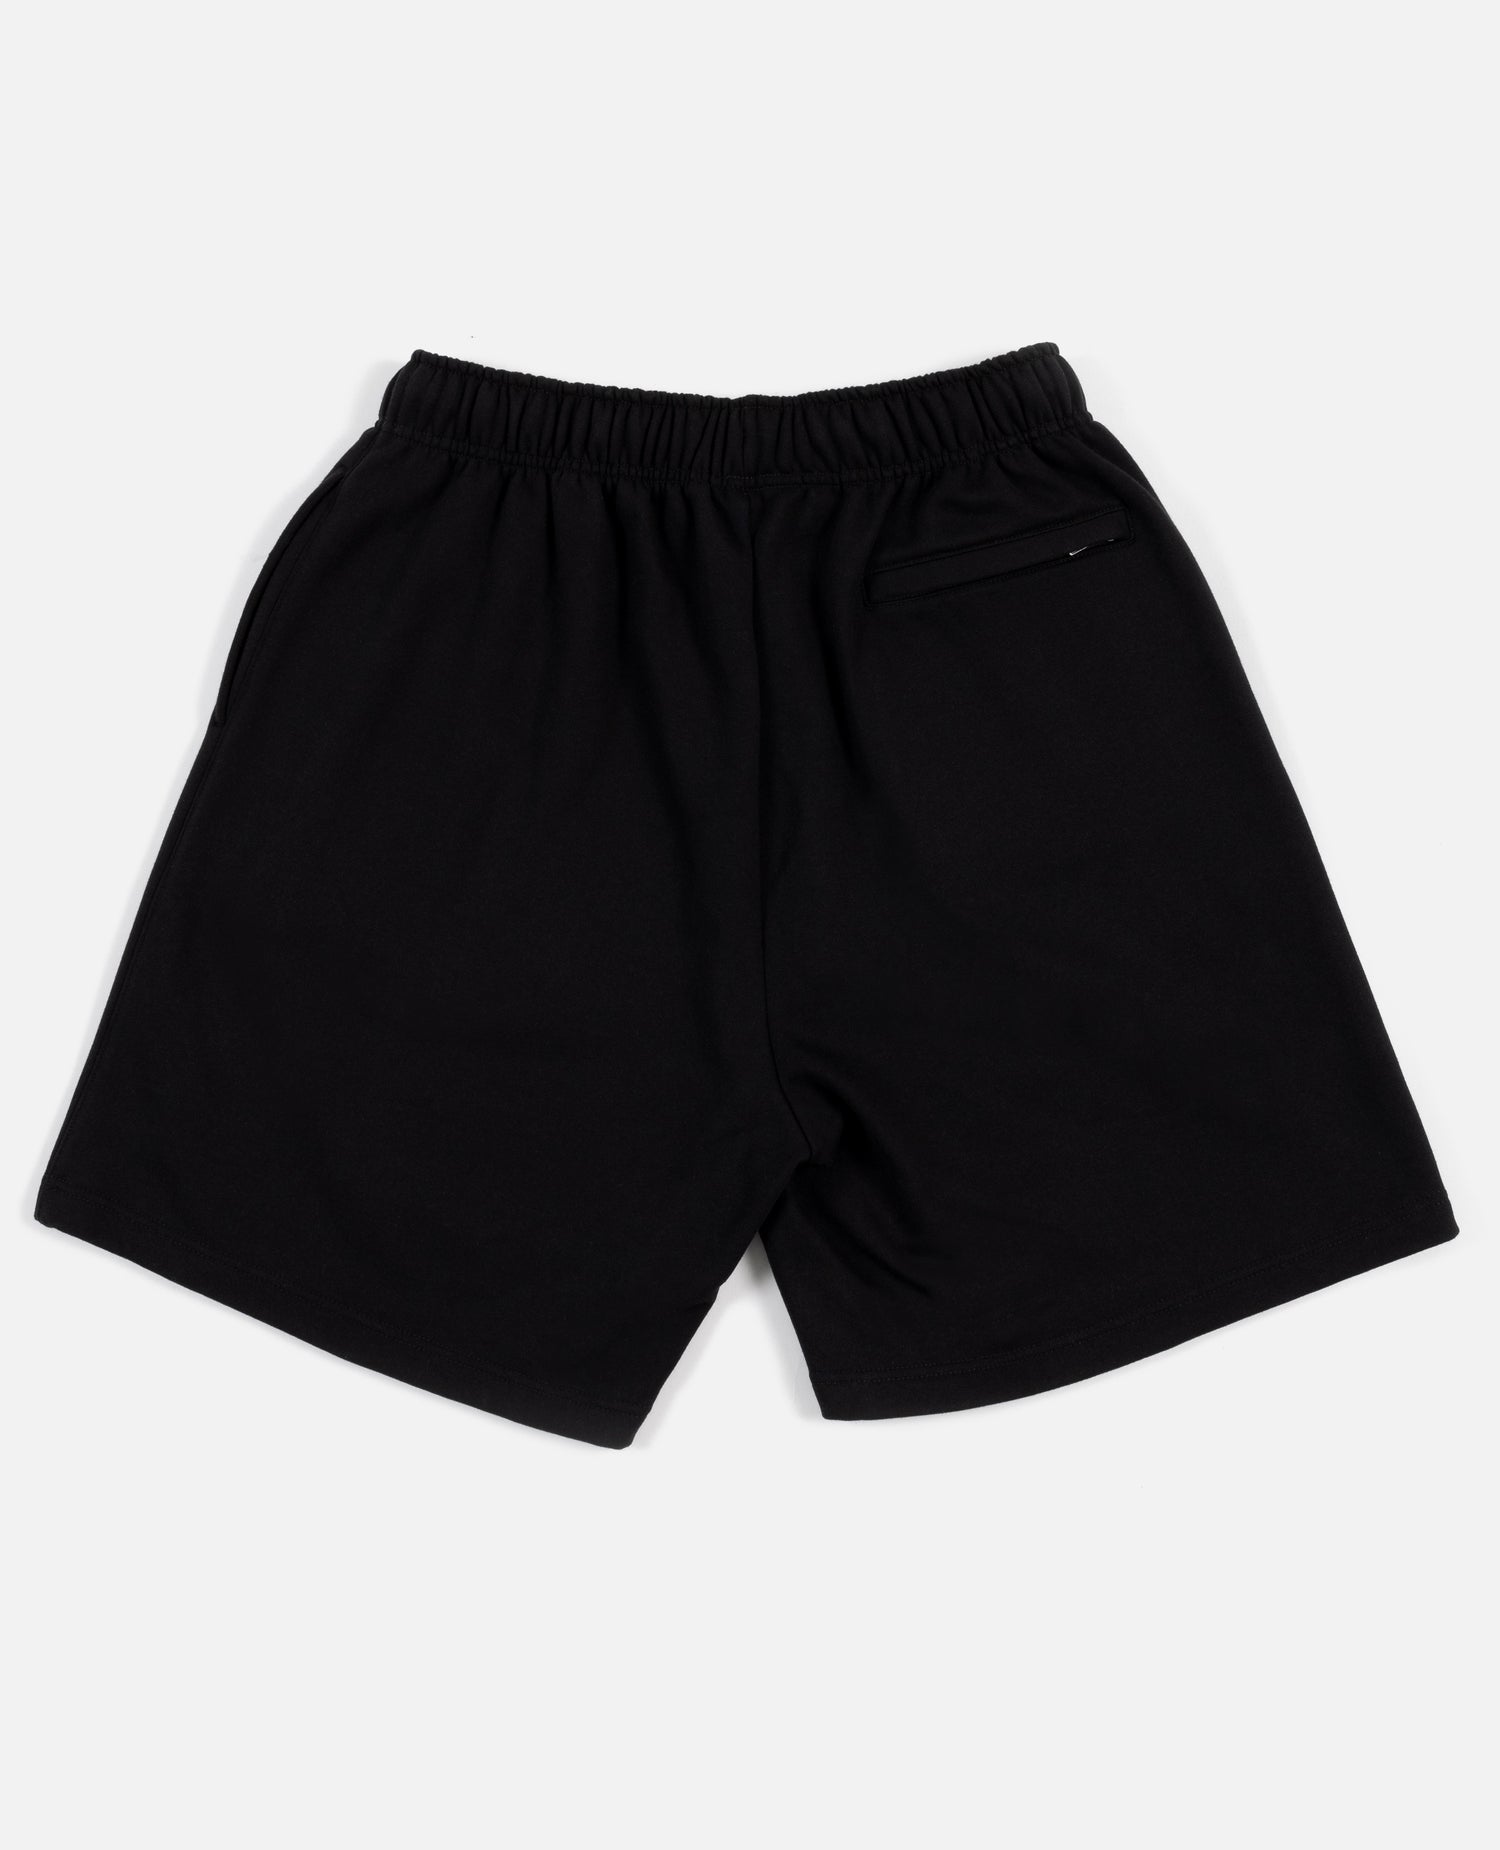 Patta Basic Jogging Shorts (Black)